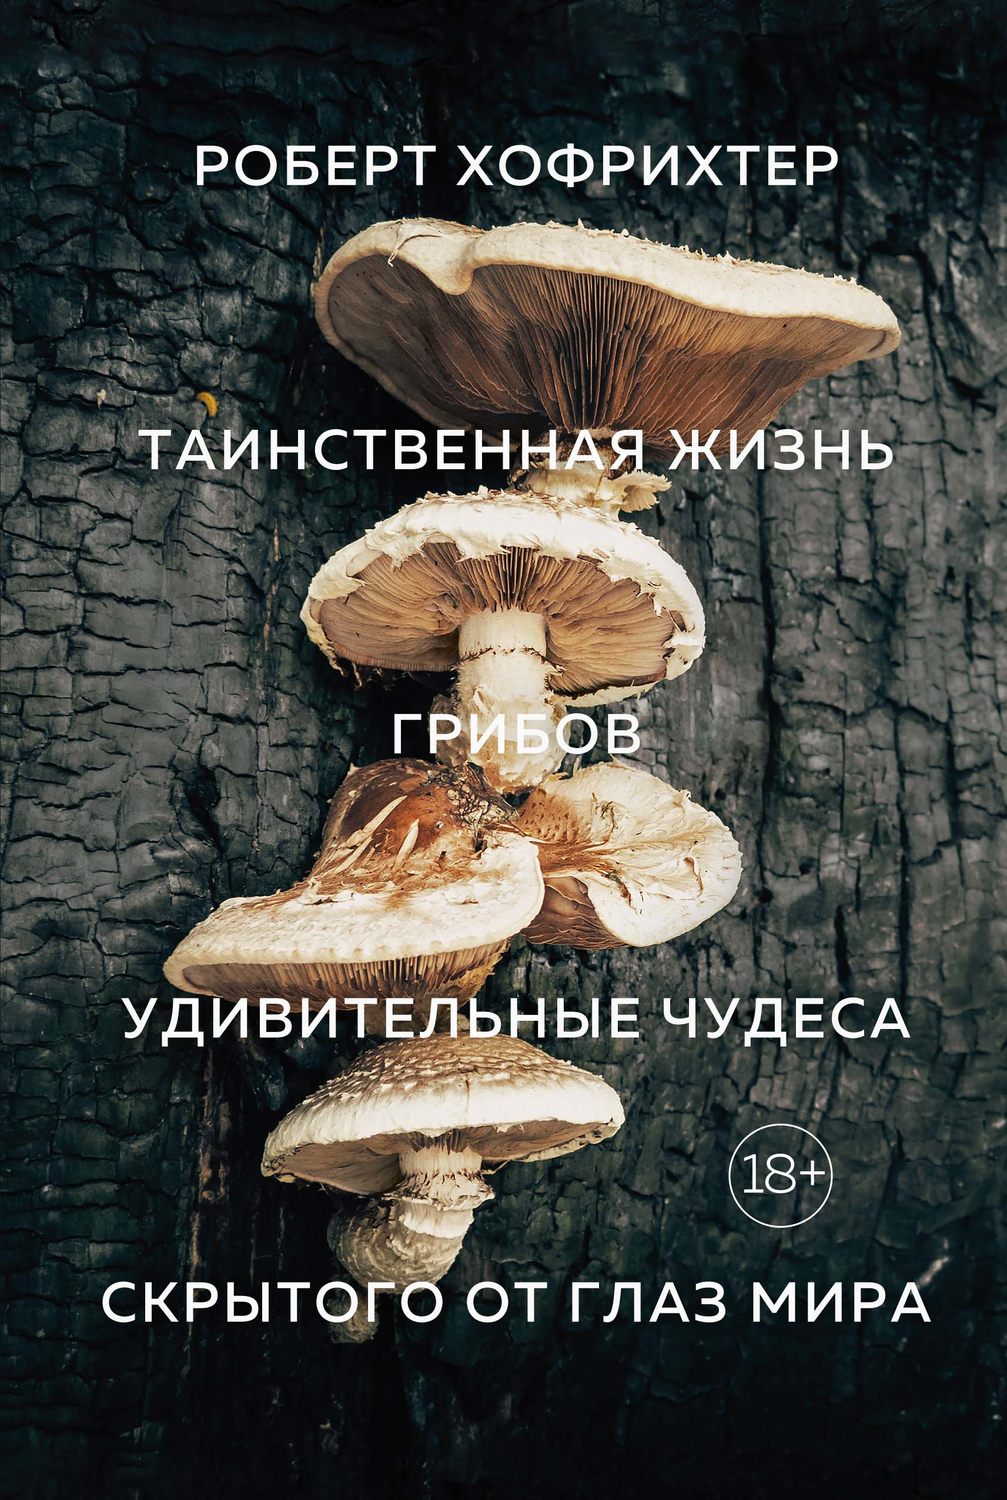 Грибы По Фото Определить Онлайн Яндекс